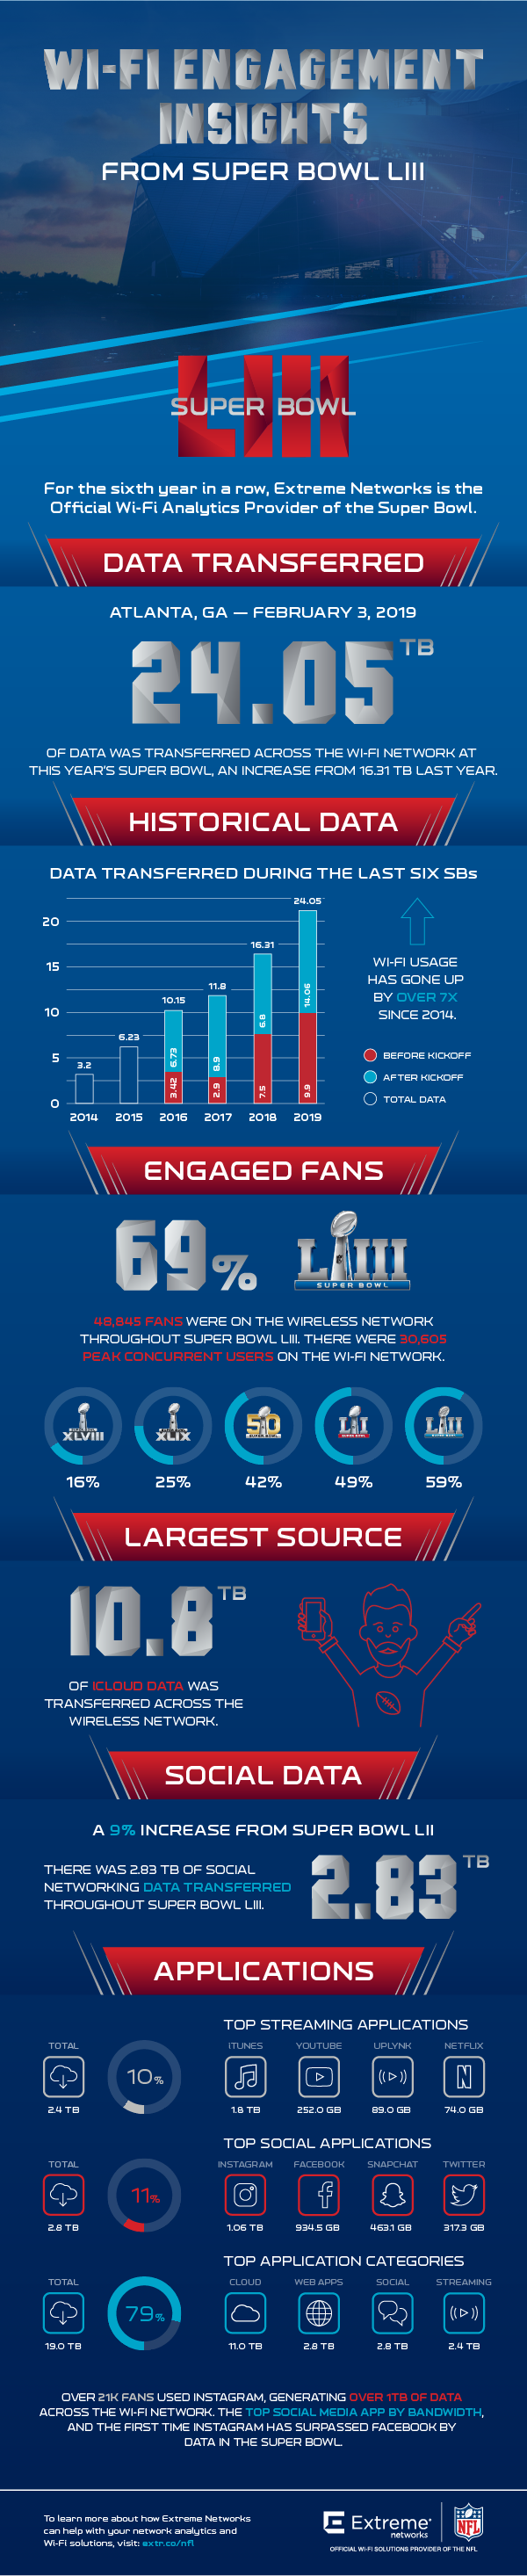 In einer Infografik stellt Extreme Networks dar, wie sich die WLAN-Nutzung beim Super Bowl in den letzten Jahren verändert hat.